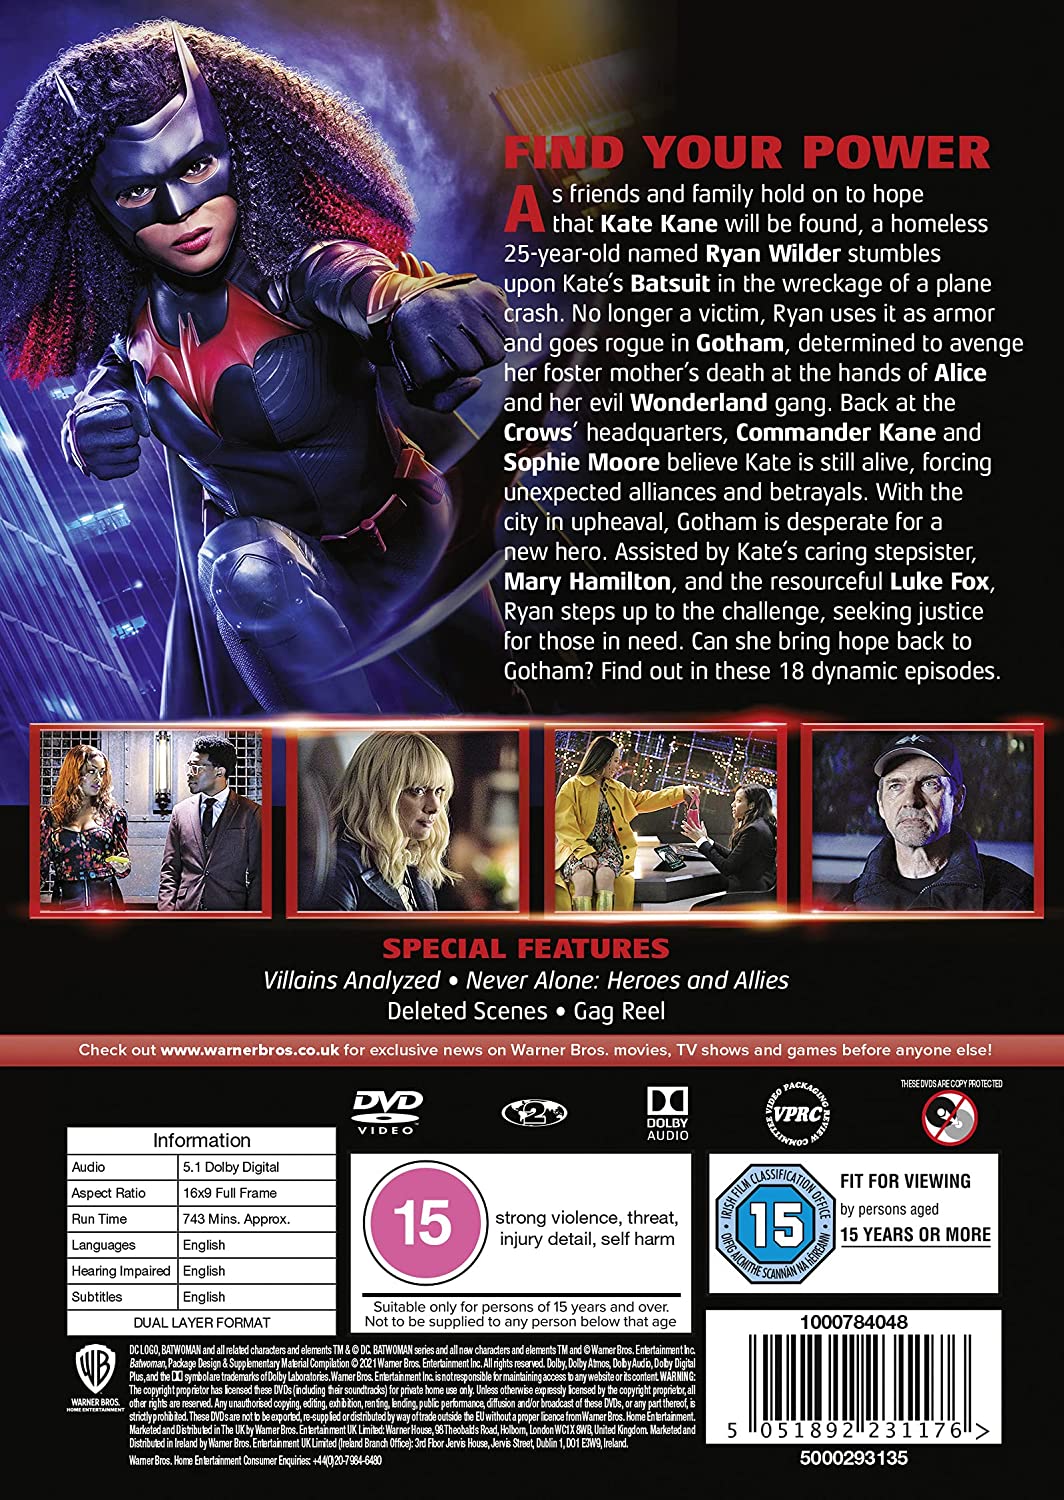 Batwoman: Season 2 [2021] - Action [DVD]